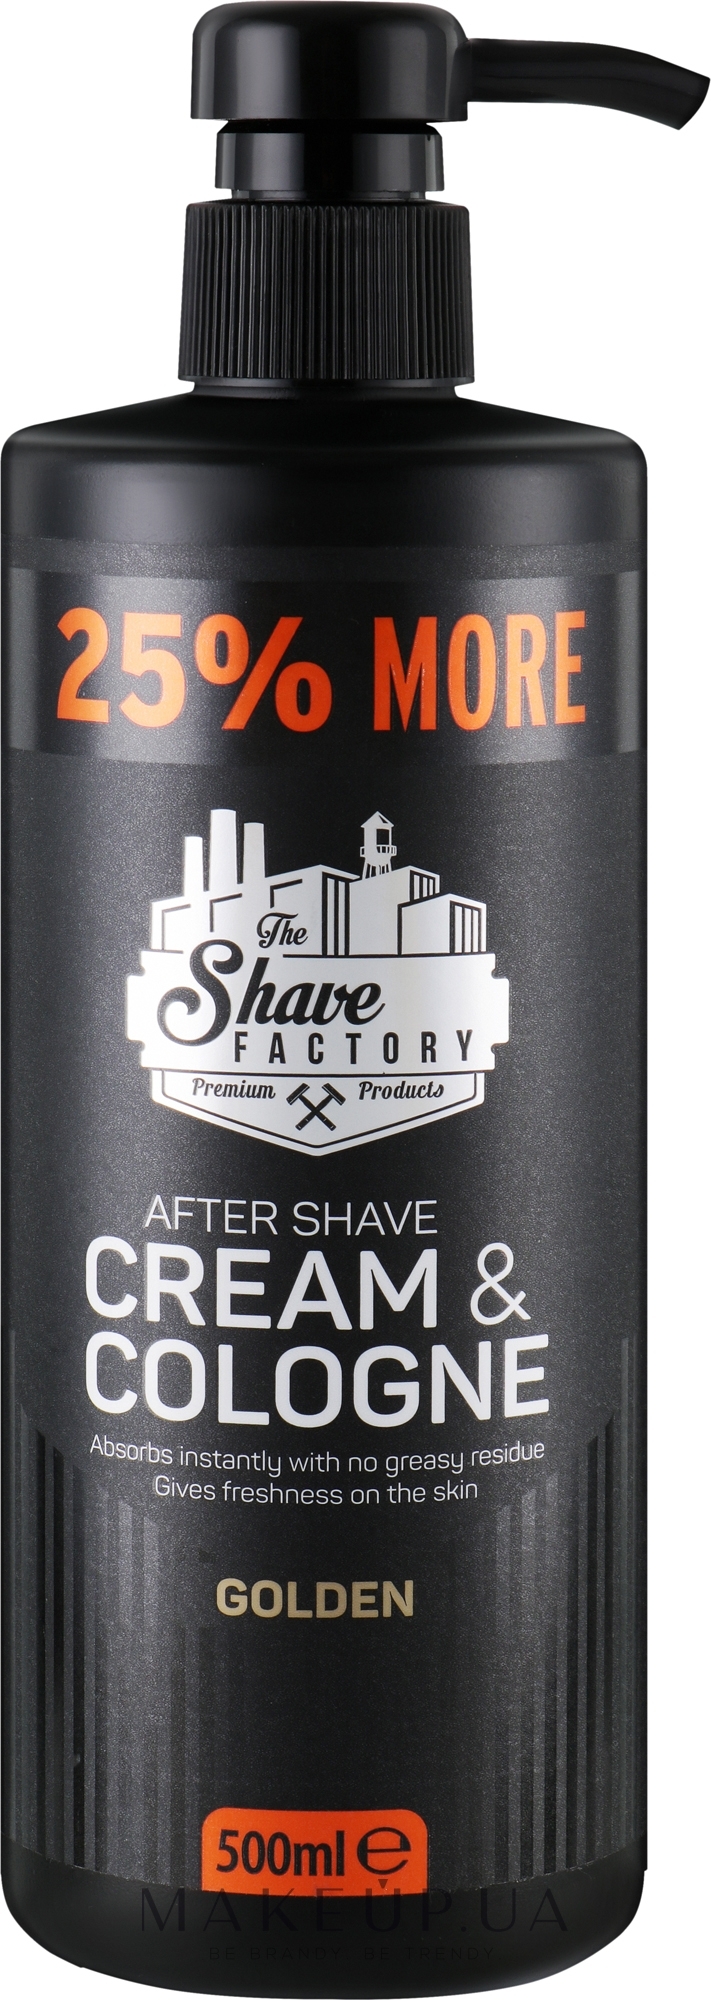 Крем-одеколон после бритья - The Shave Factory Cream & Cologne Golden — фото 500ml